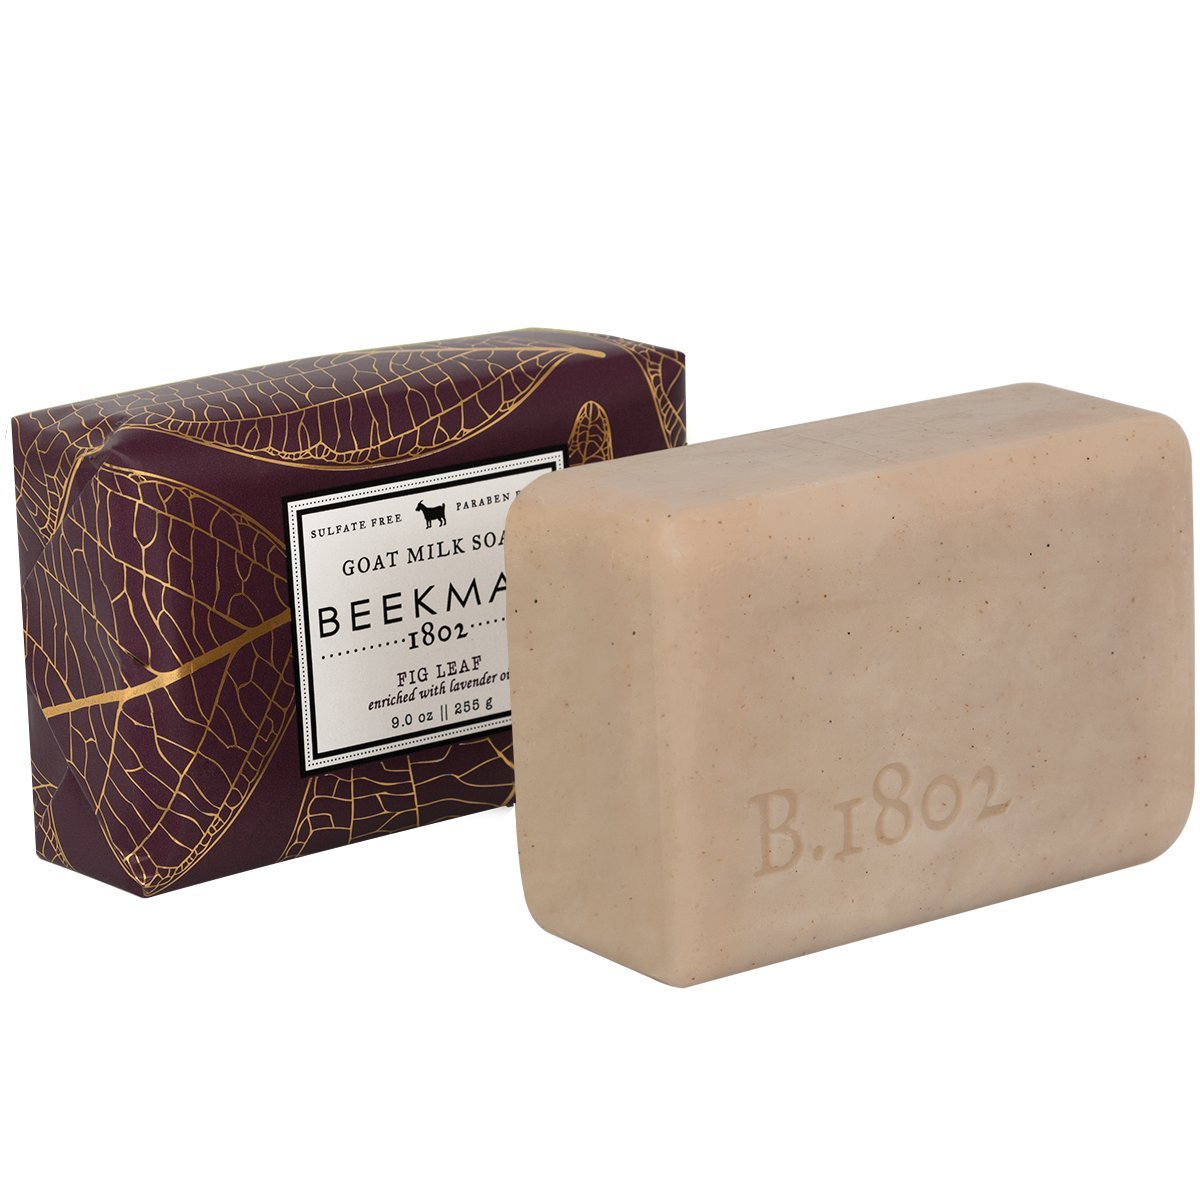 Beekman 1802 Fig Leaf Goat Milk Soap - 9.0 oz. - The Finished Room